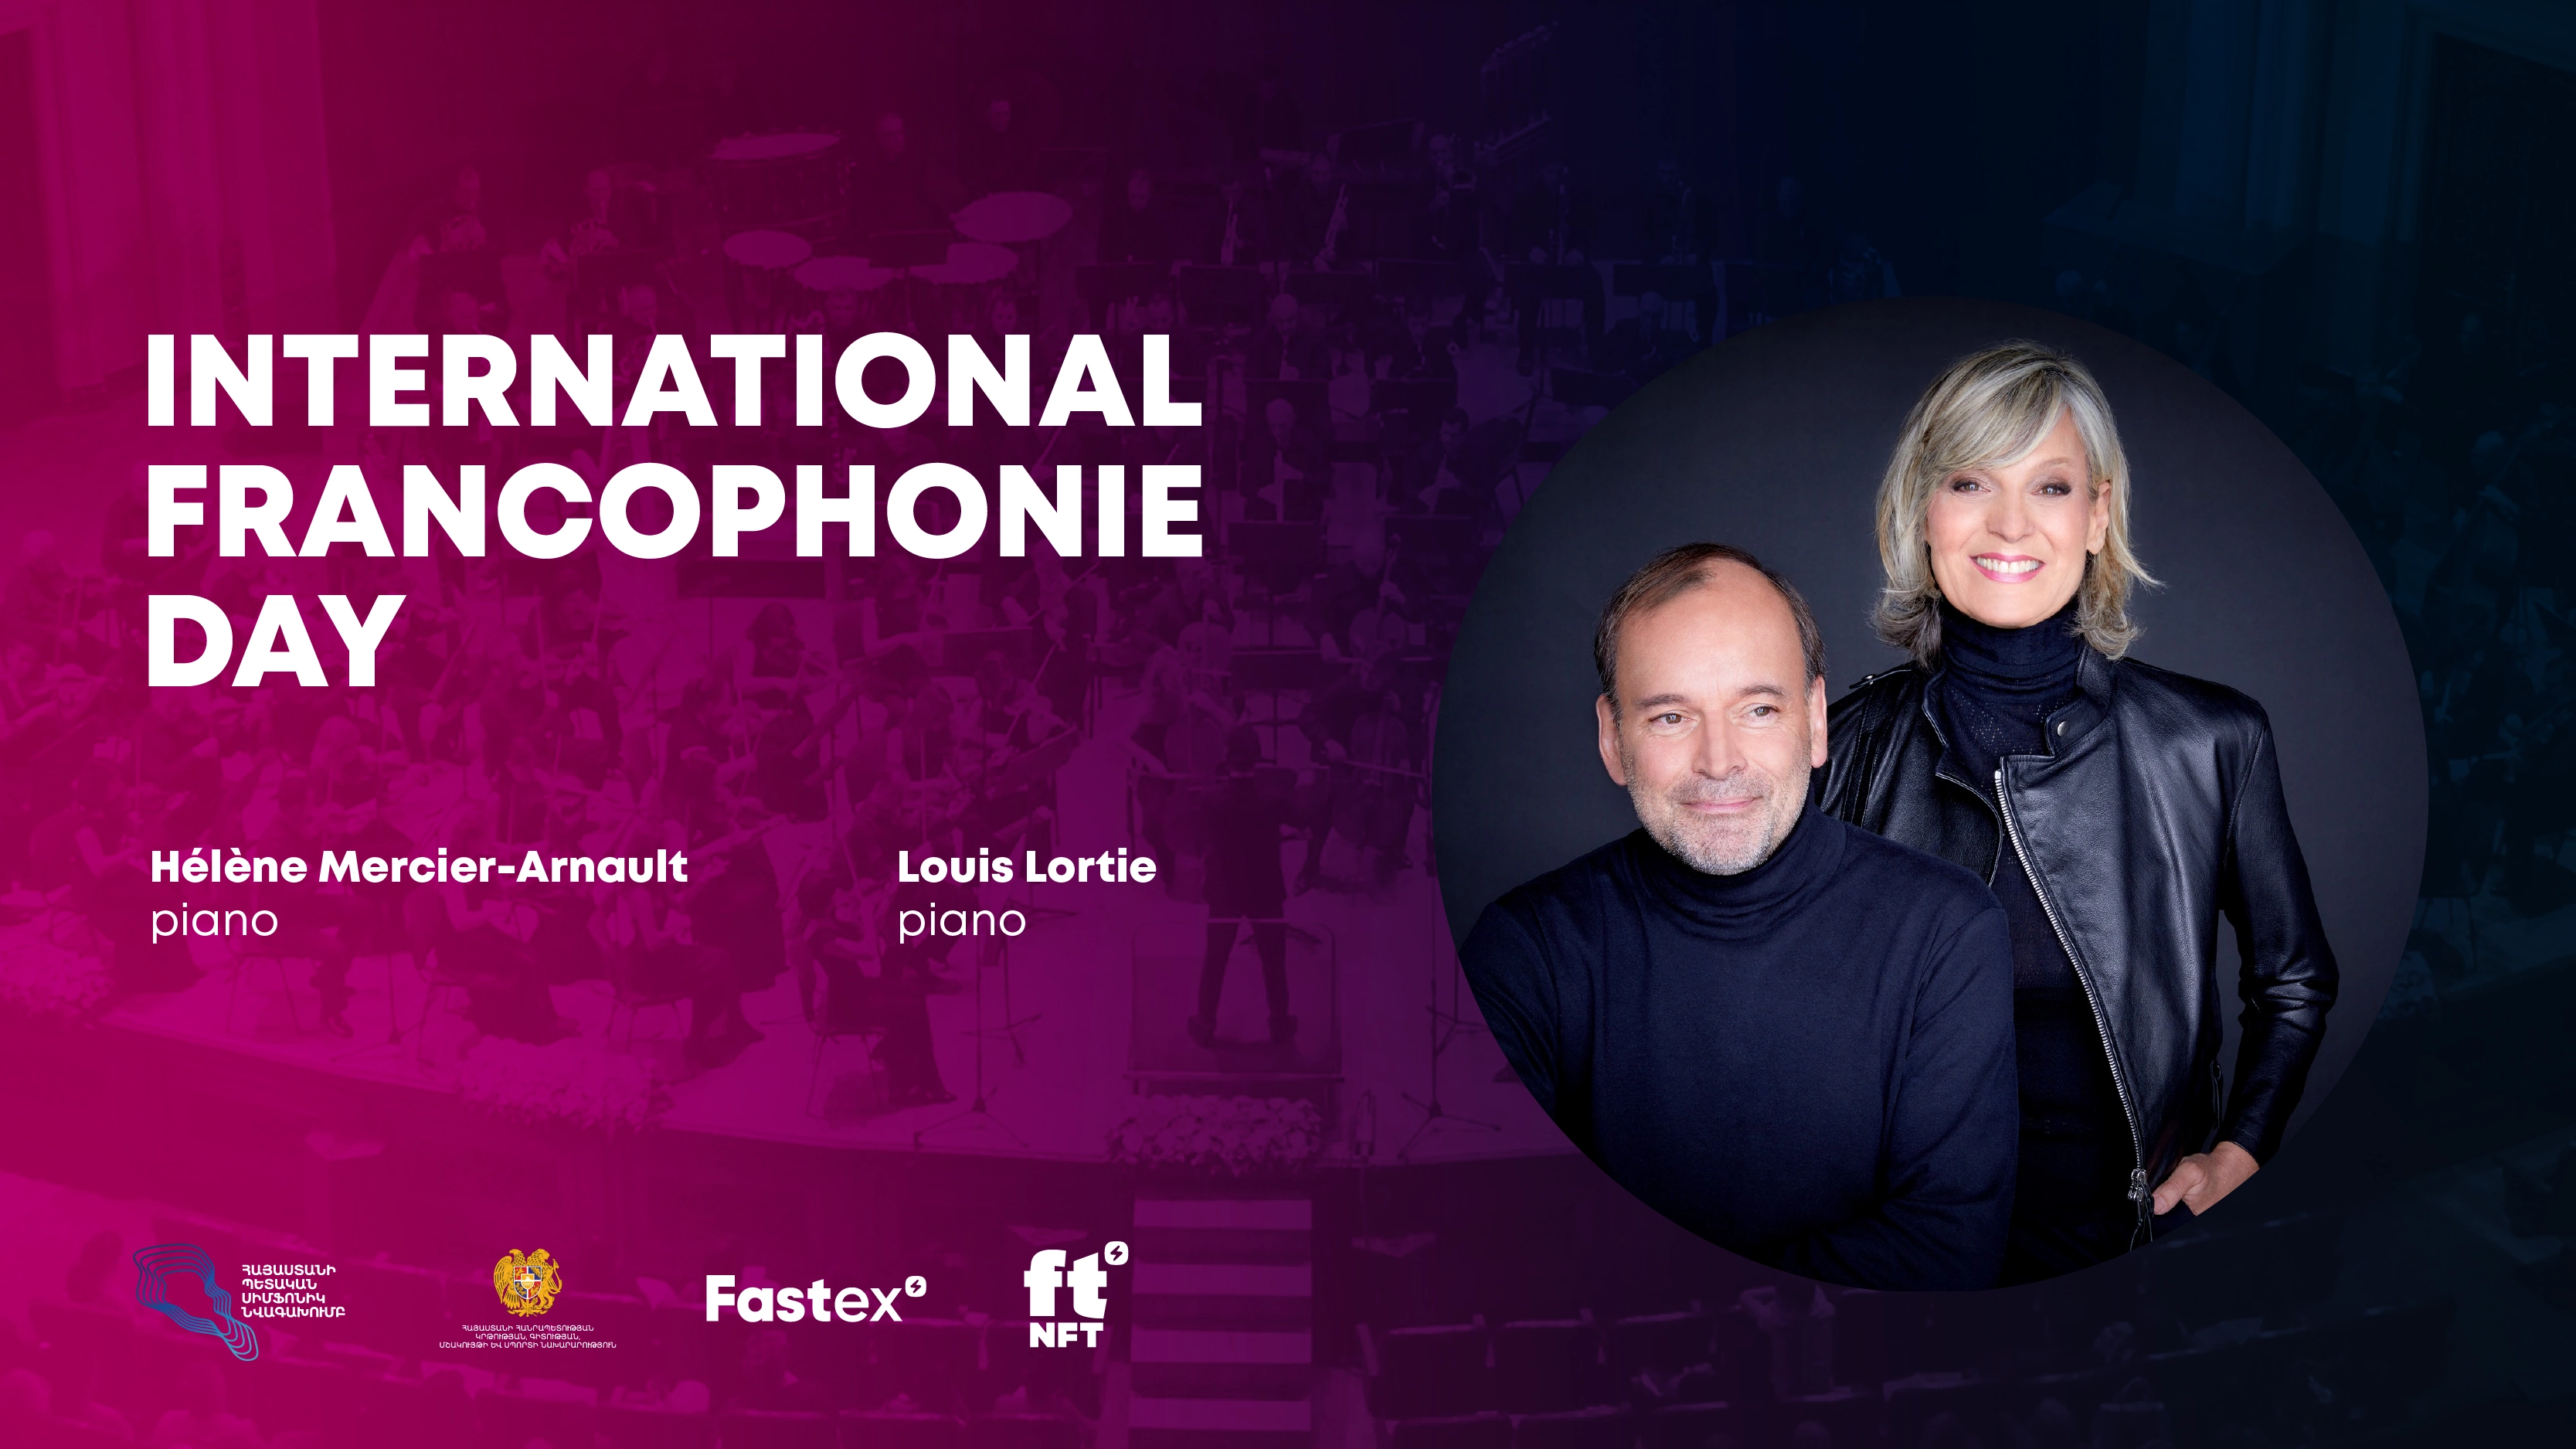 Fastex-ի և ftNFT-ի աջակցությամբ կայացավ Ֆրանկոֆոնիայի միջազգային օրվան նվիրված սիմֆոնիկ համերգը